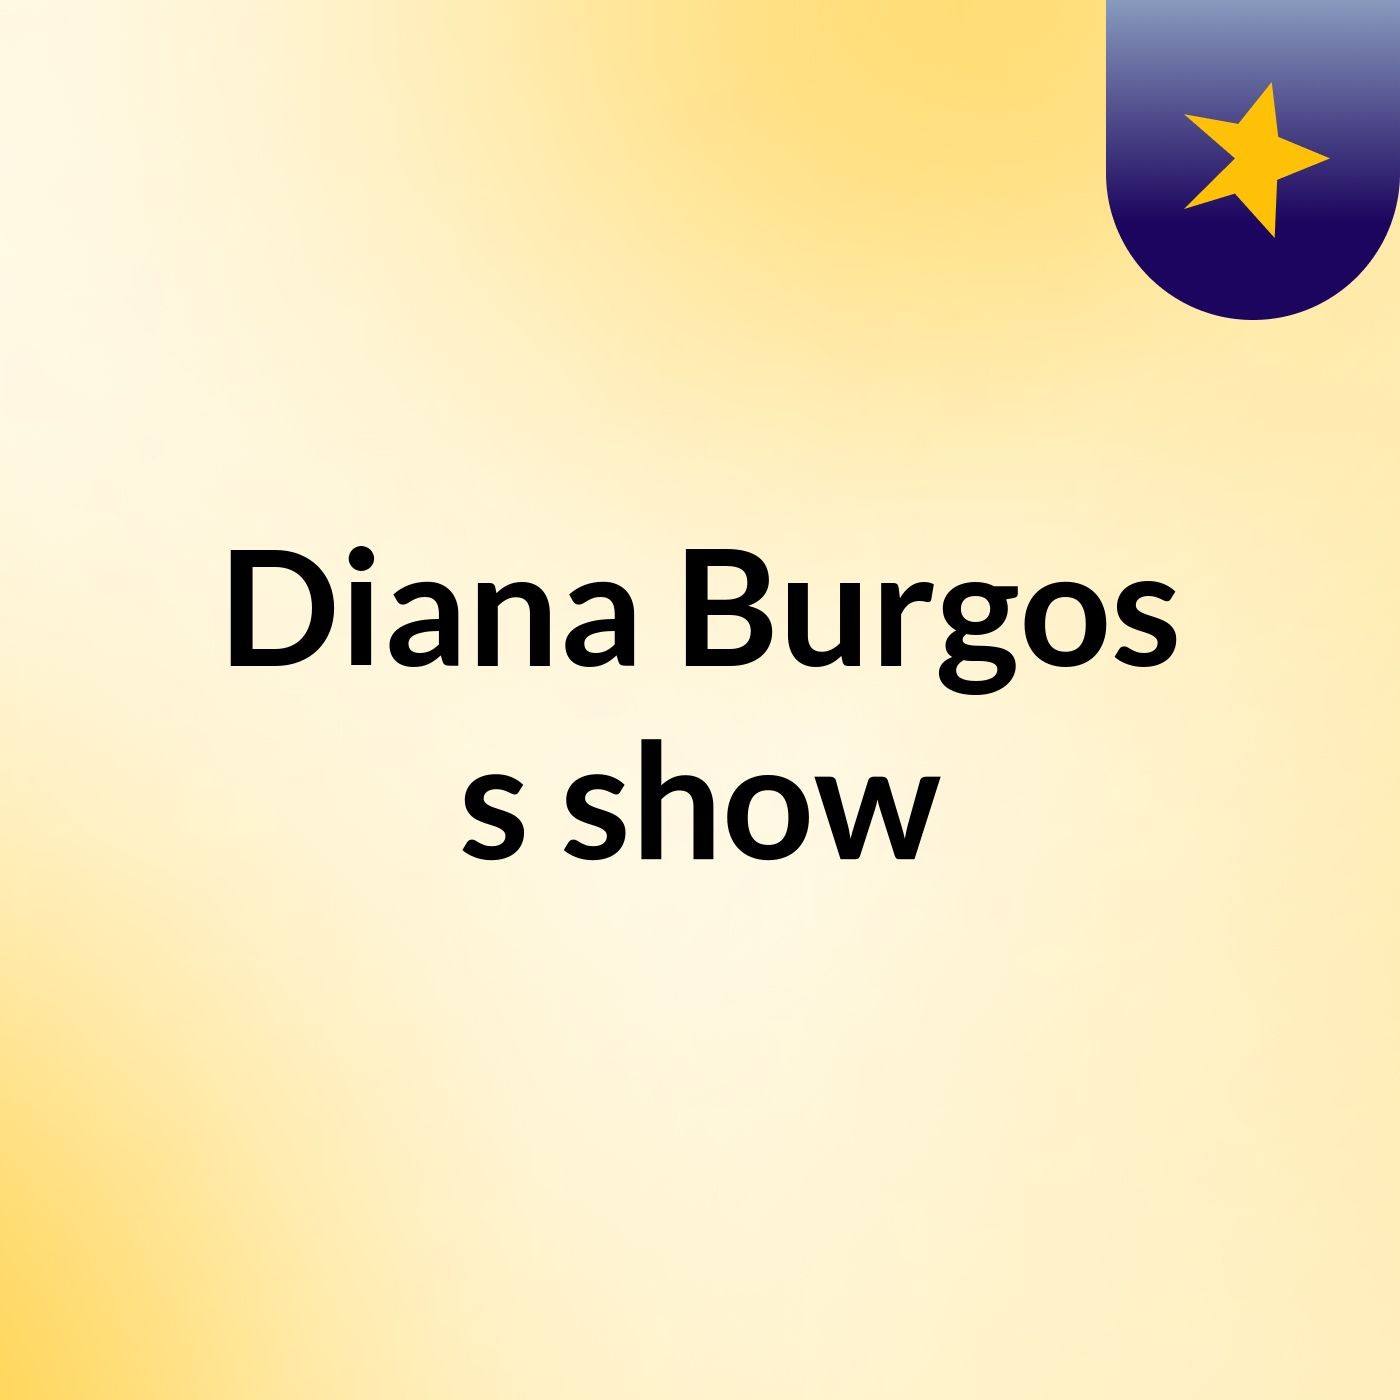 Diana Burgos's show